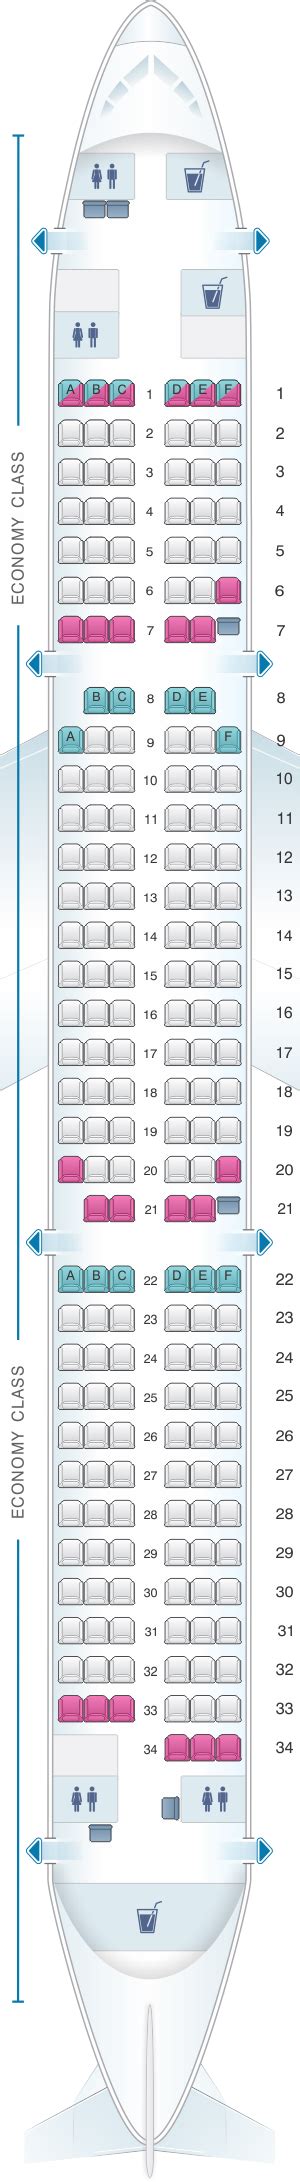 Seat Map Finnair Airbus A321